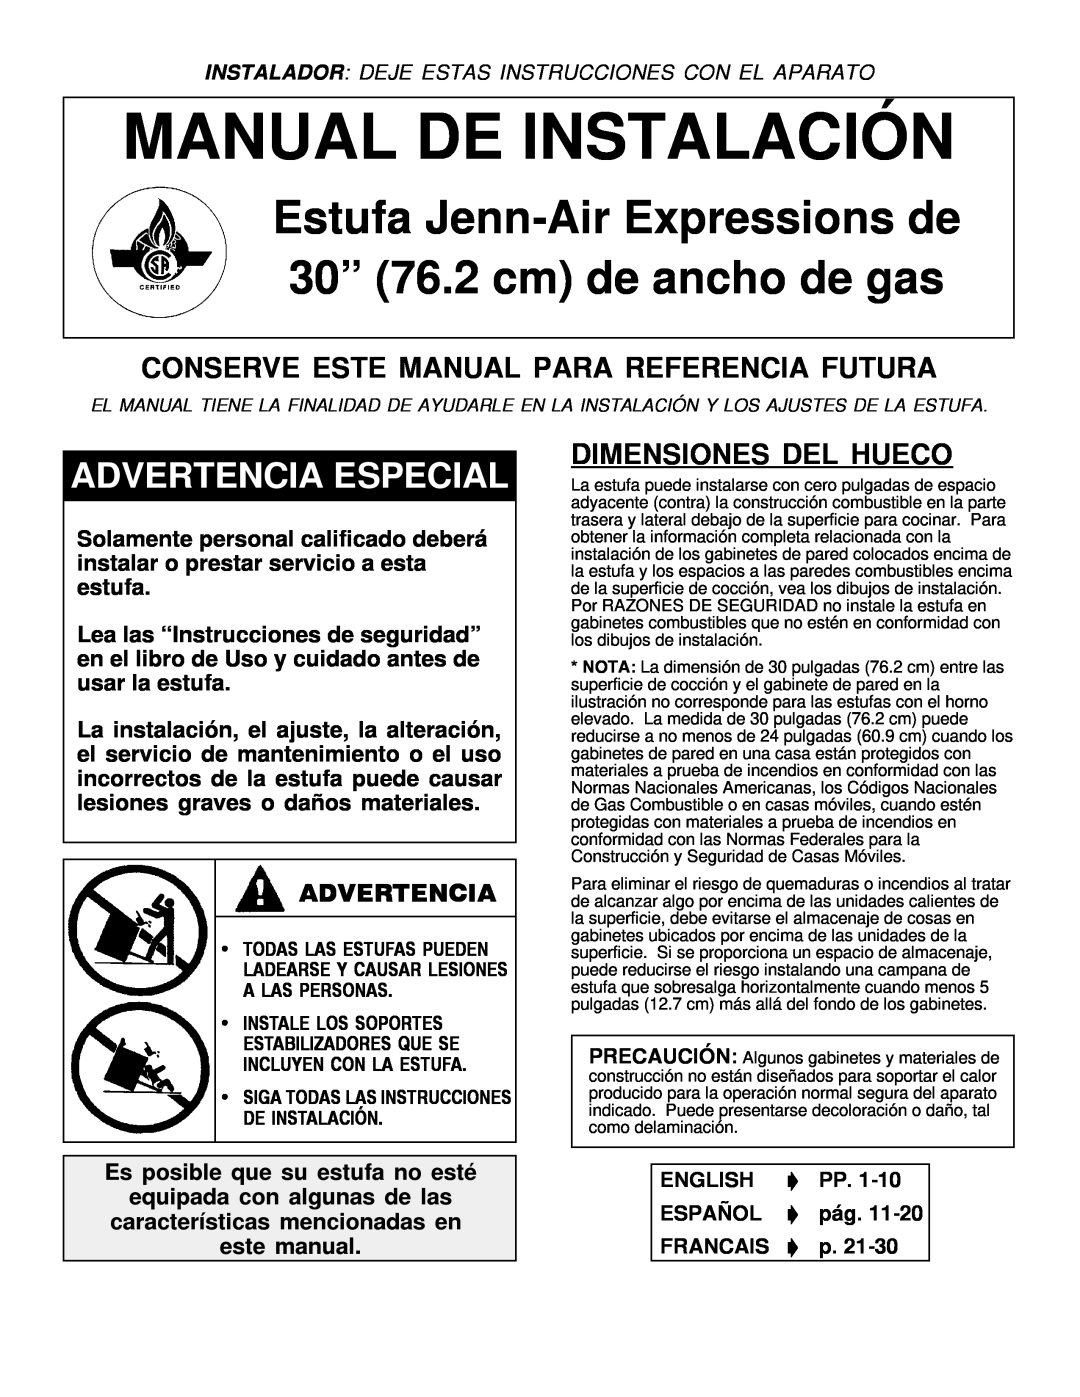 Jenn-Air Range Conserve Este Manual Para Referencia Futura, Dimensiones Del Hueco, Advertencia, Manual De Instalación 